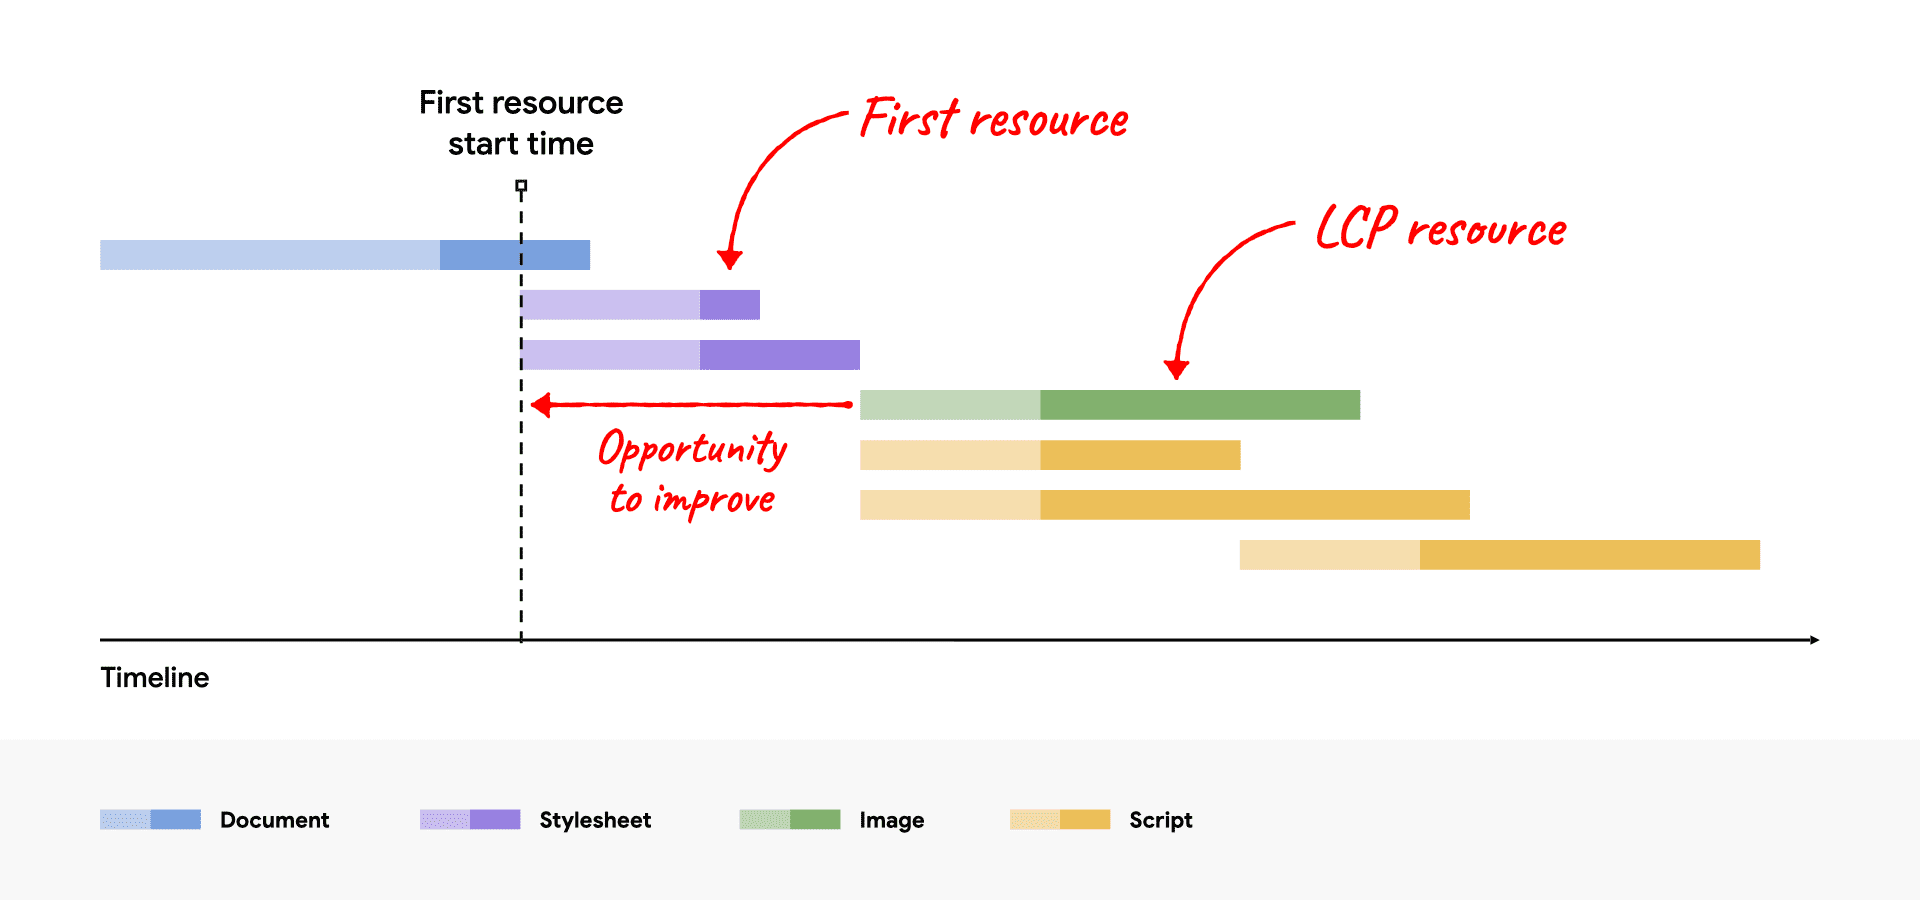 LCP kaynağını ilk kaynaktan sonra başlayan ve iyileştirme fırsatlarını gösteren ağ şelalesi diyagramı